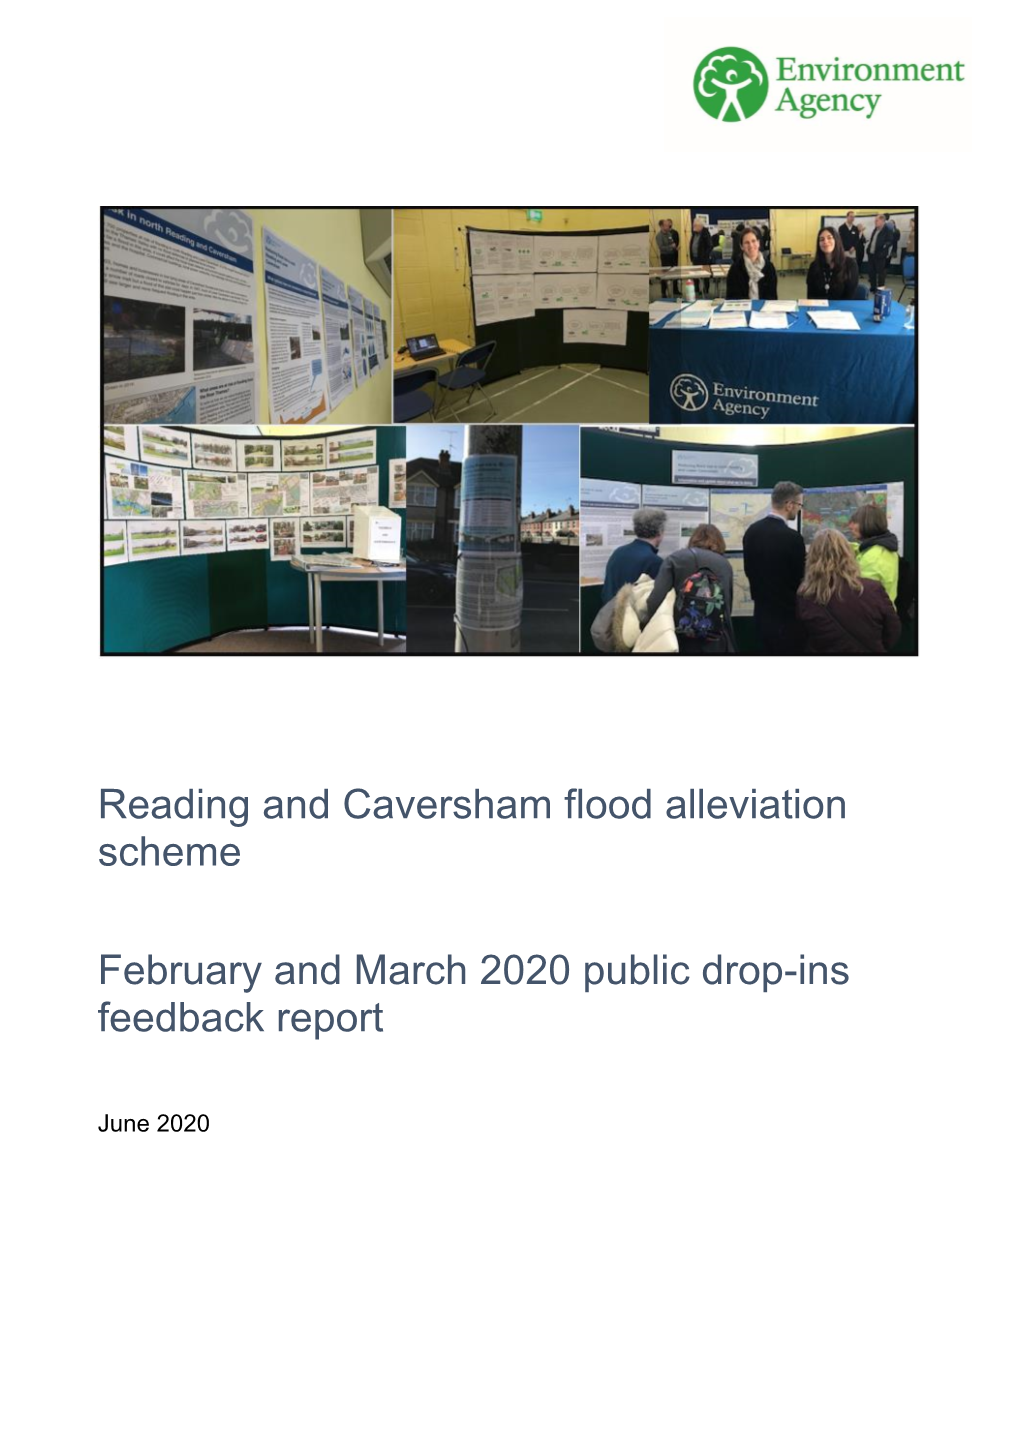 Reading and Caversham Flood Alleviation Scheme